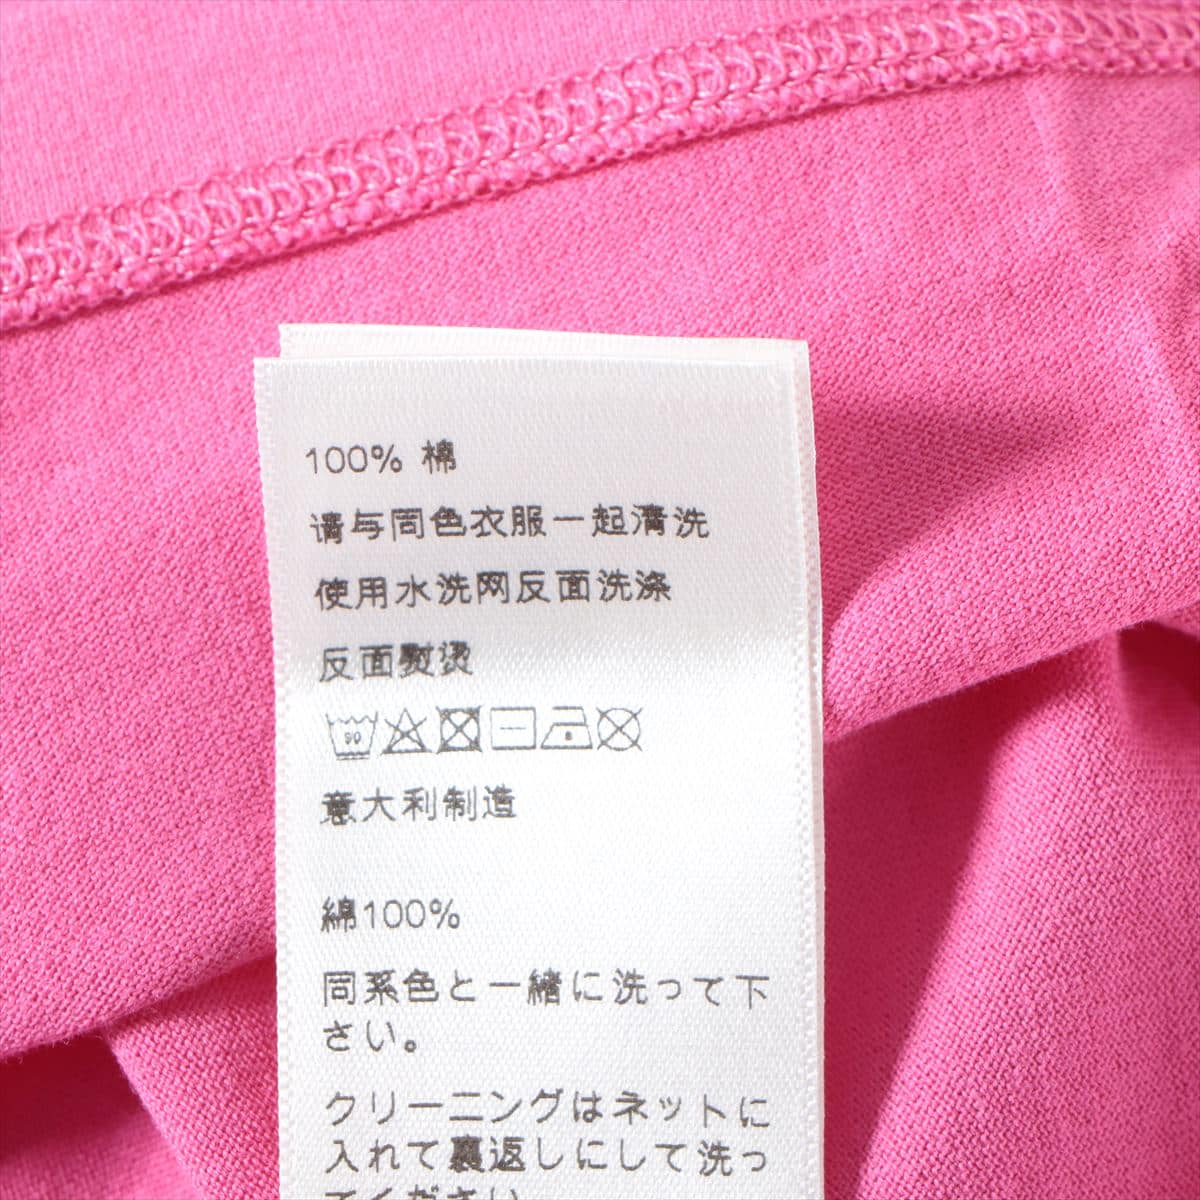 セリーヌ エディ期 コットン Tシャツ XXS メンズ ピンク  ロゴ